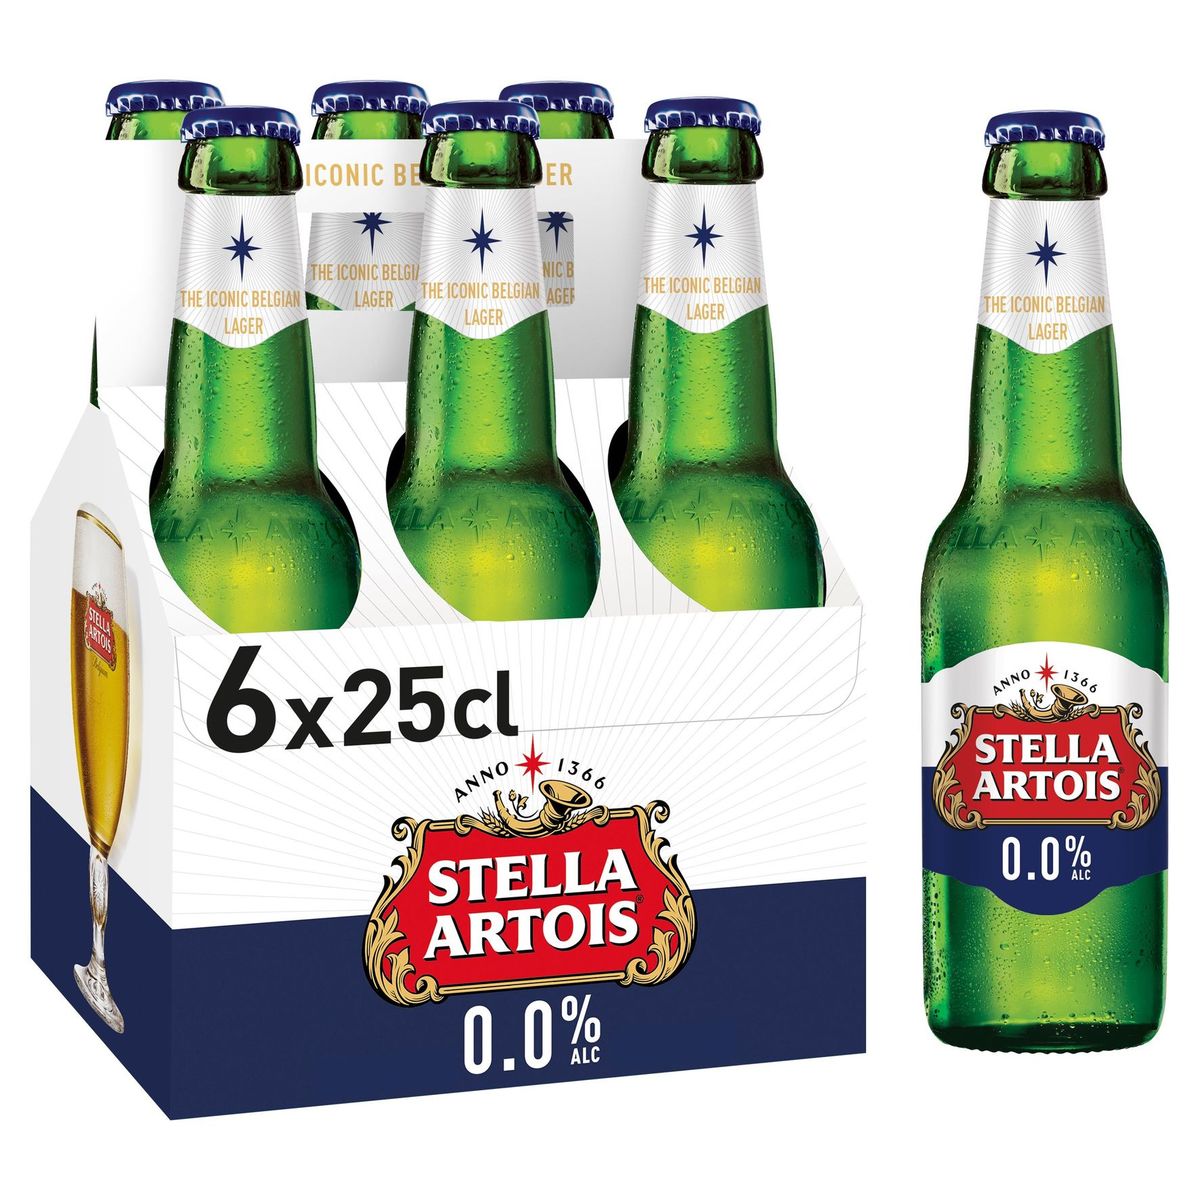 Stella Artois 0.0% Alc Bouteilles 6 x 25 cl